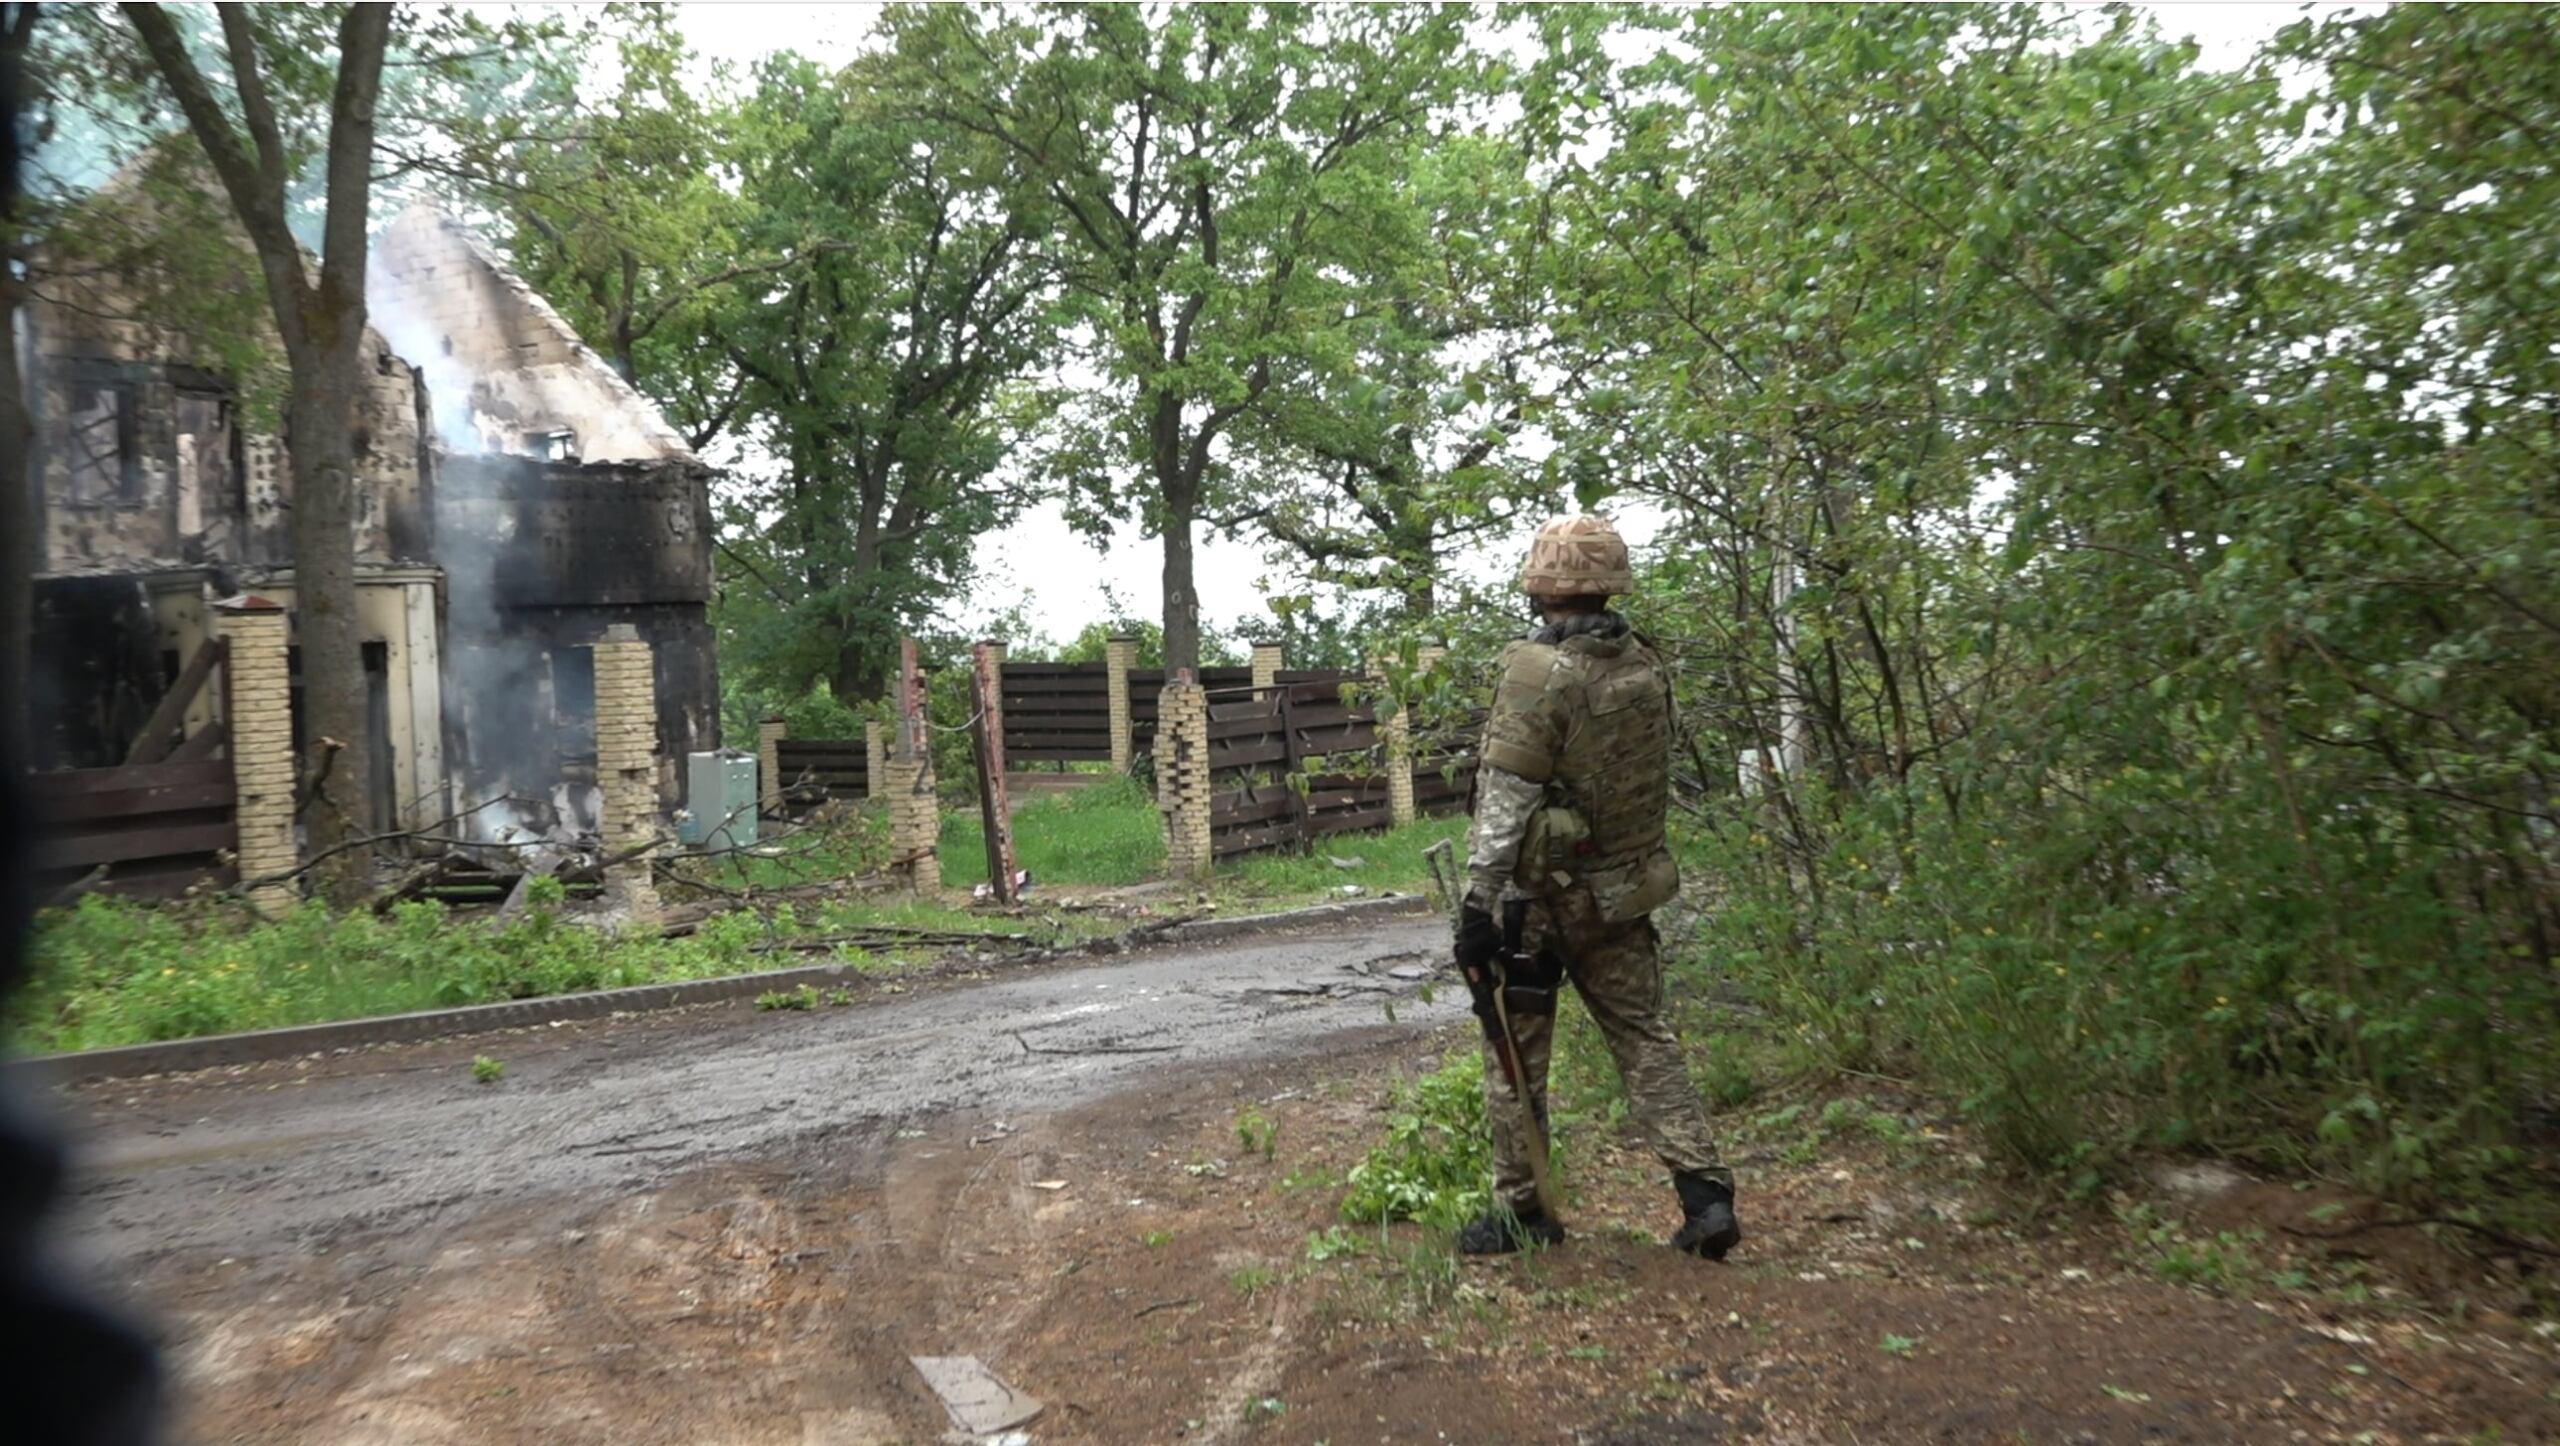 Żołnierz przechodzi przez drogę w ukraińskim Charkowie